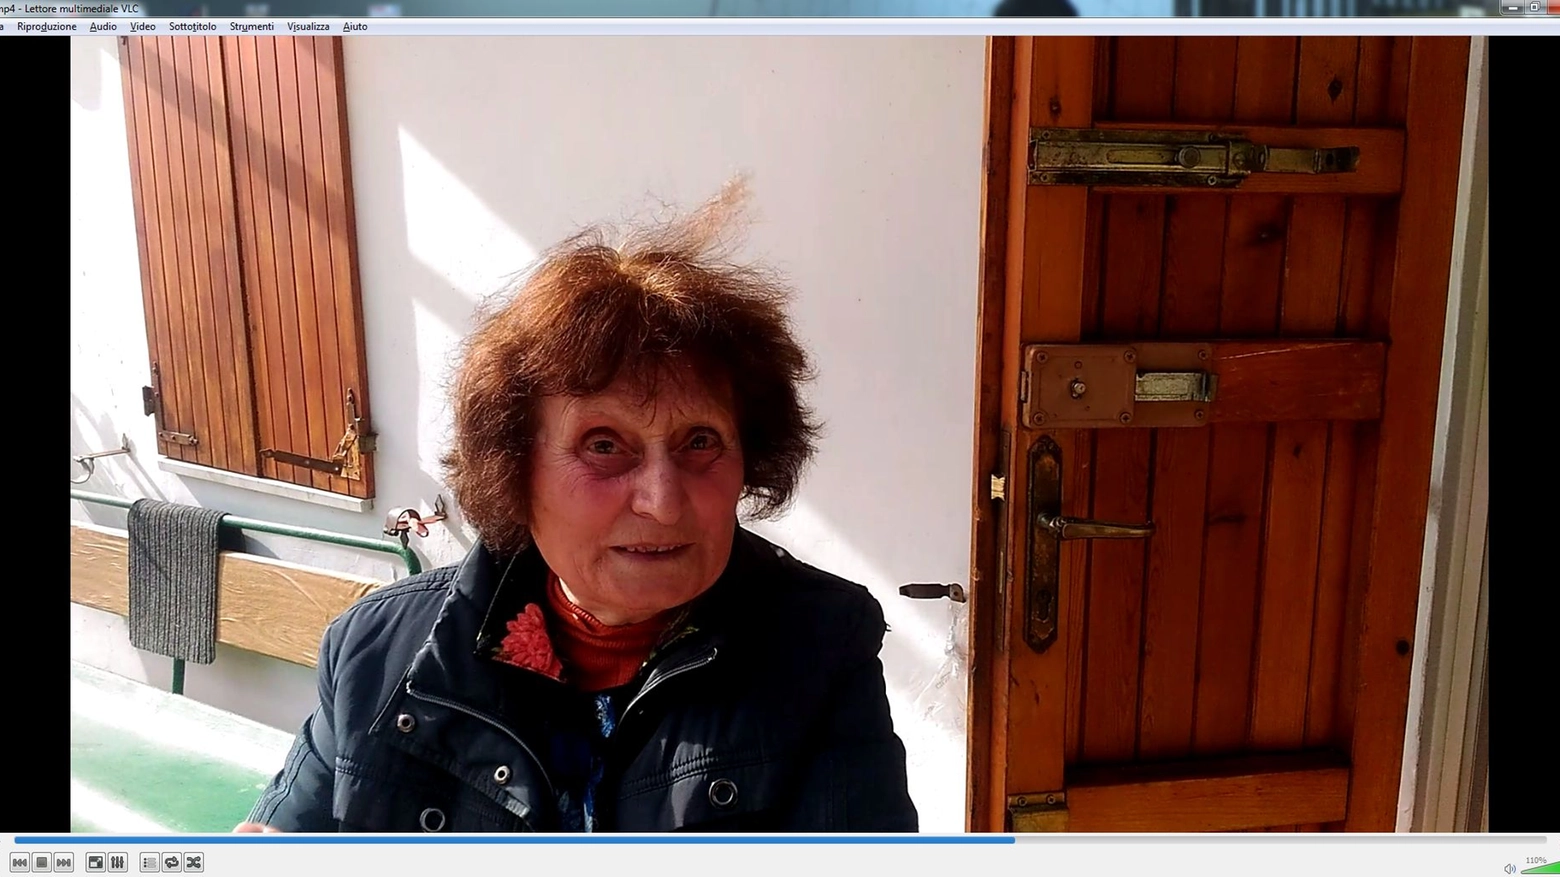 La signora di 81 anni visitata dai ladri, mostra i segni di effrazione sulla porta